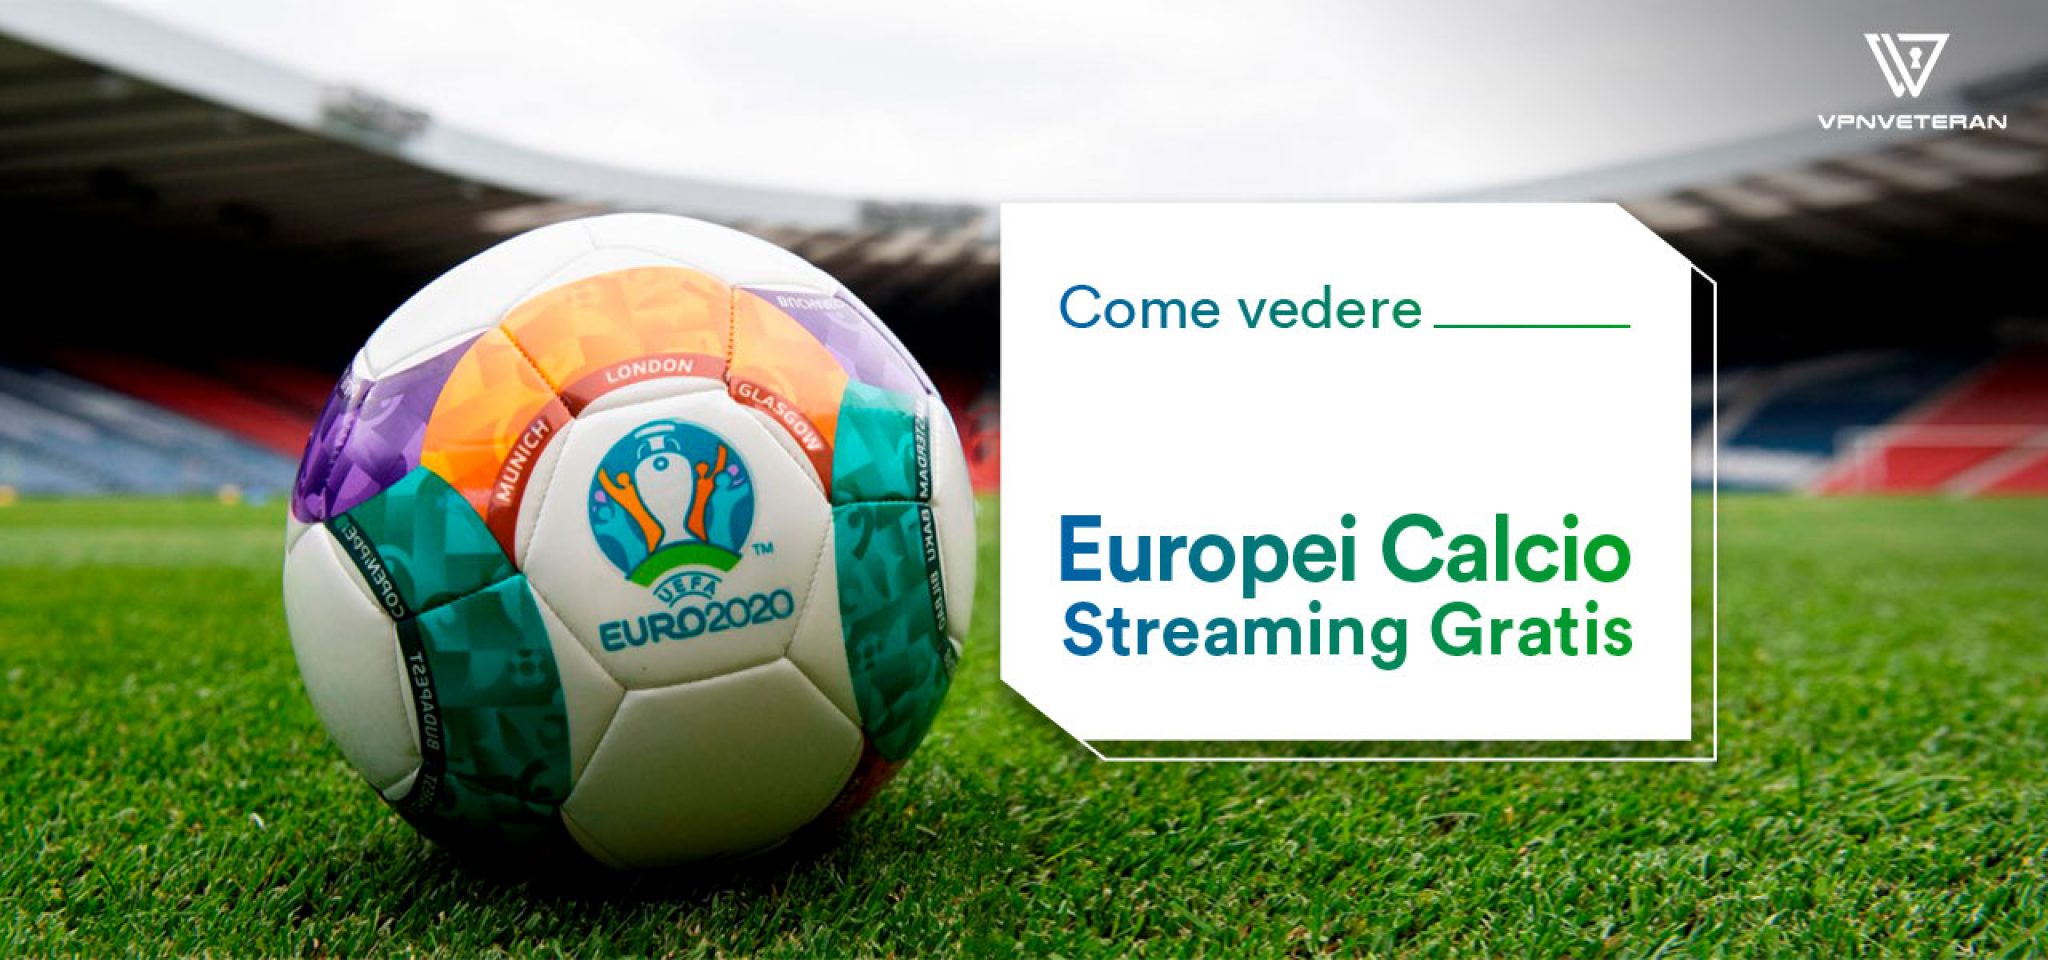 Come vedere gli Europei Calcio Streaming